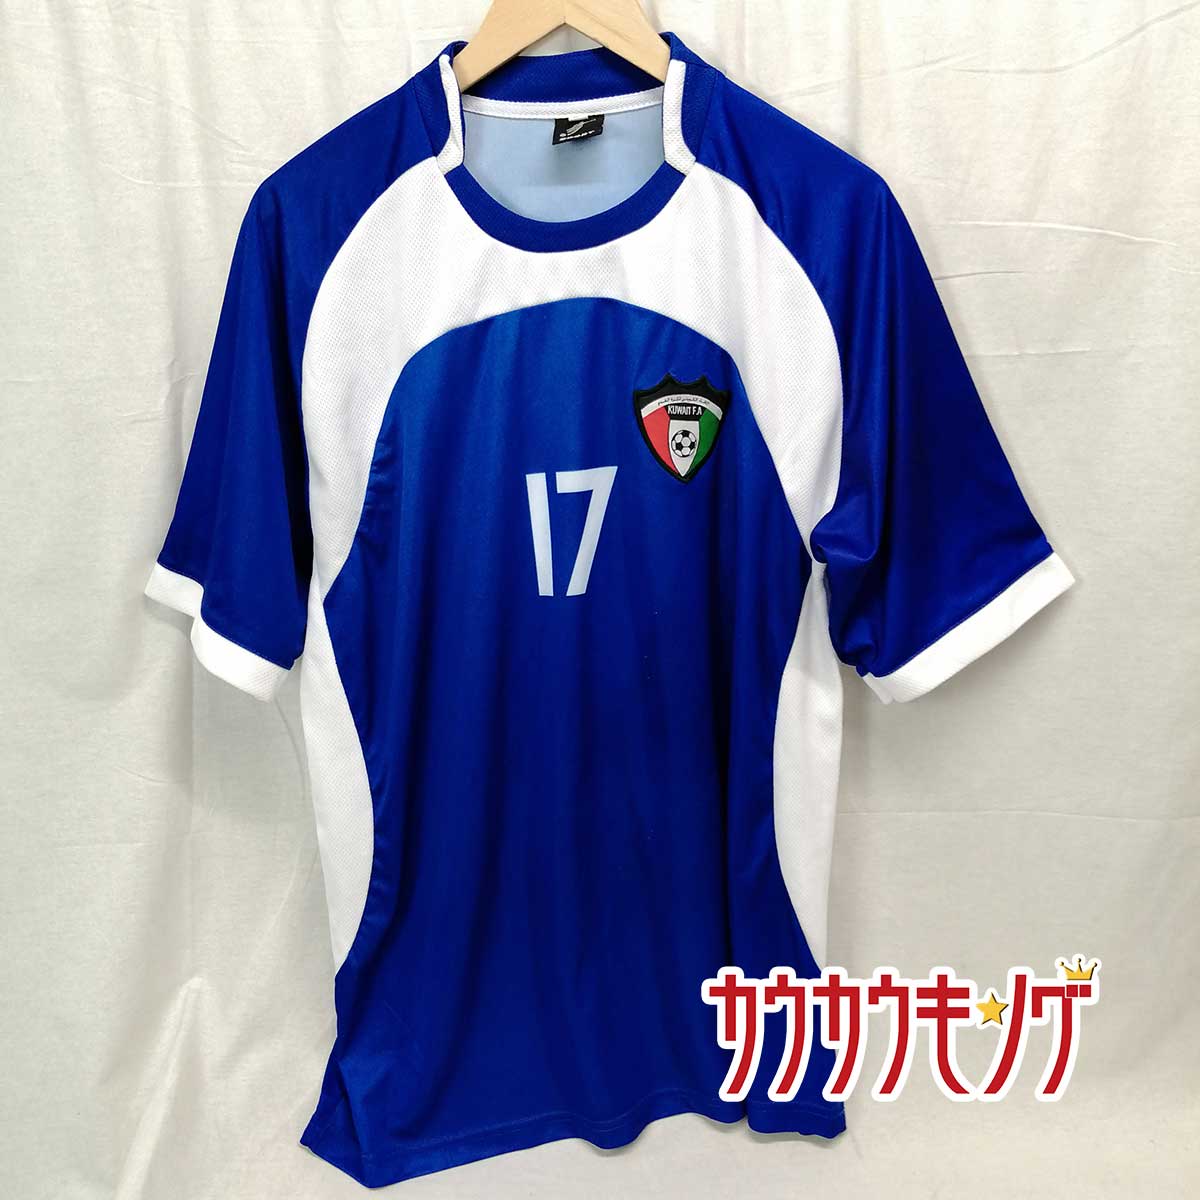 【中古】サッカー クウェート代表 KUWAIT F.A ユニフォーム #17 XL サッカーウェア